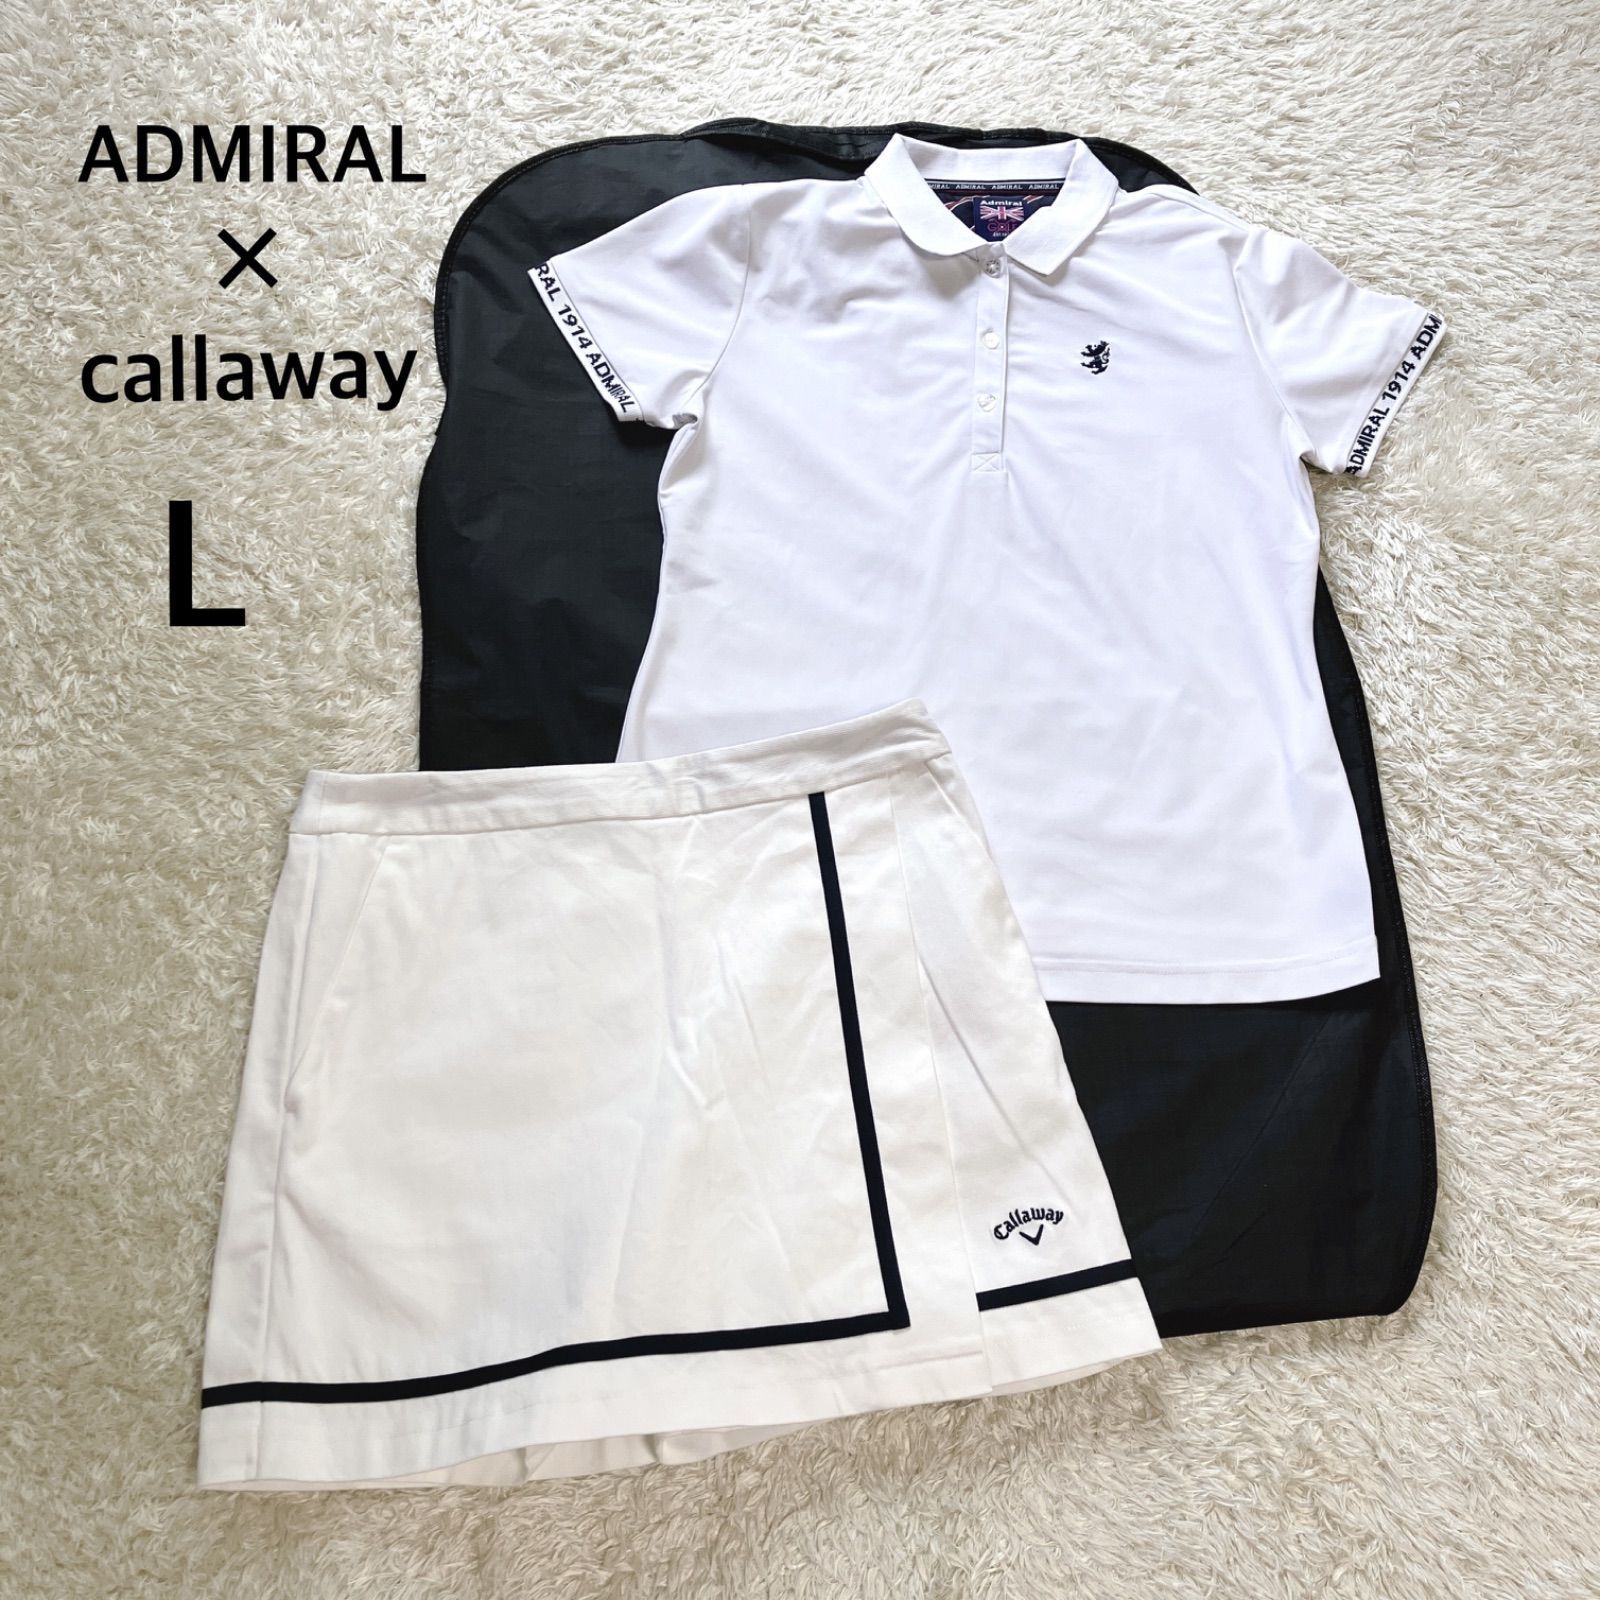 アドミラル ADMIRAL×キャロウェイ callaway ゴルフウェアセットアップ